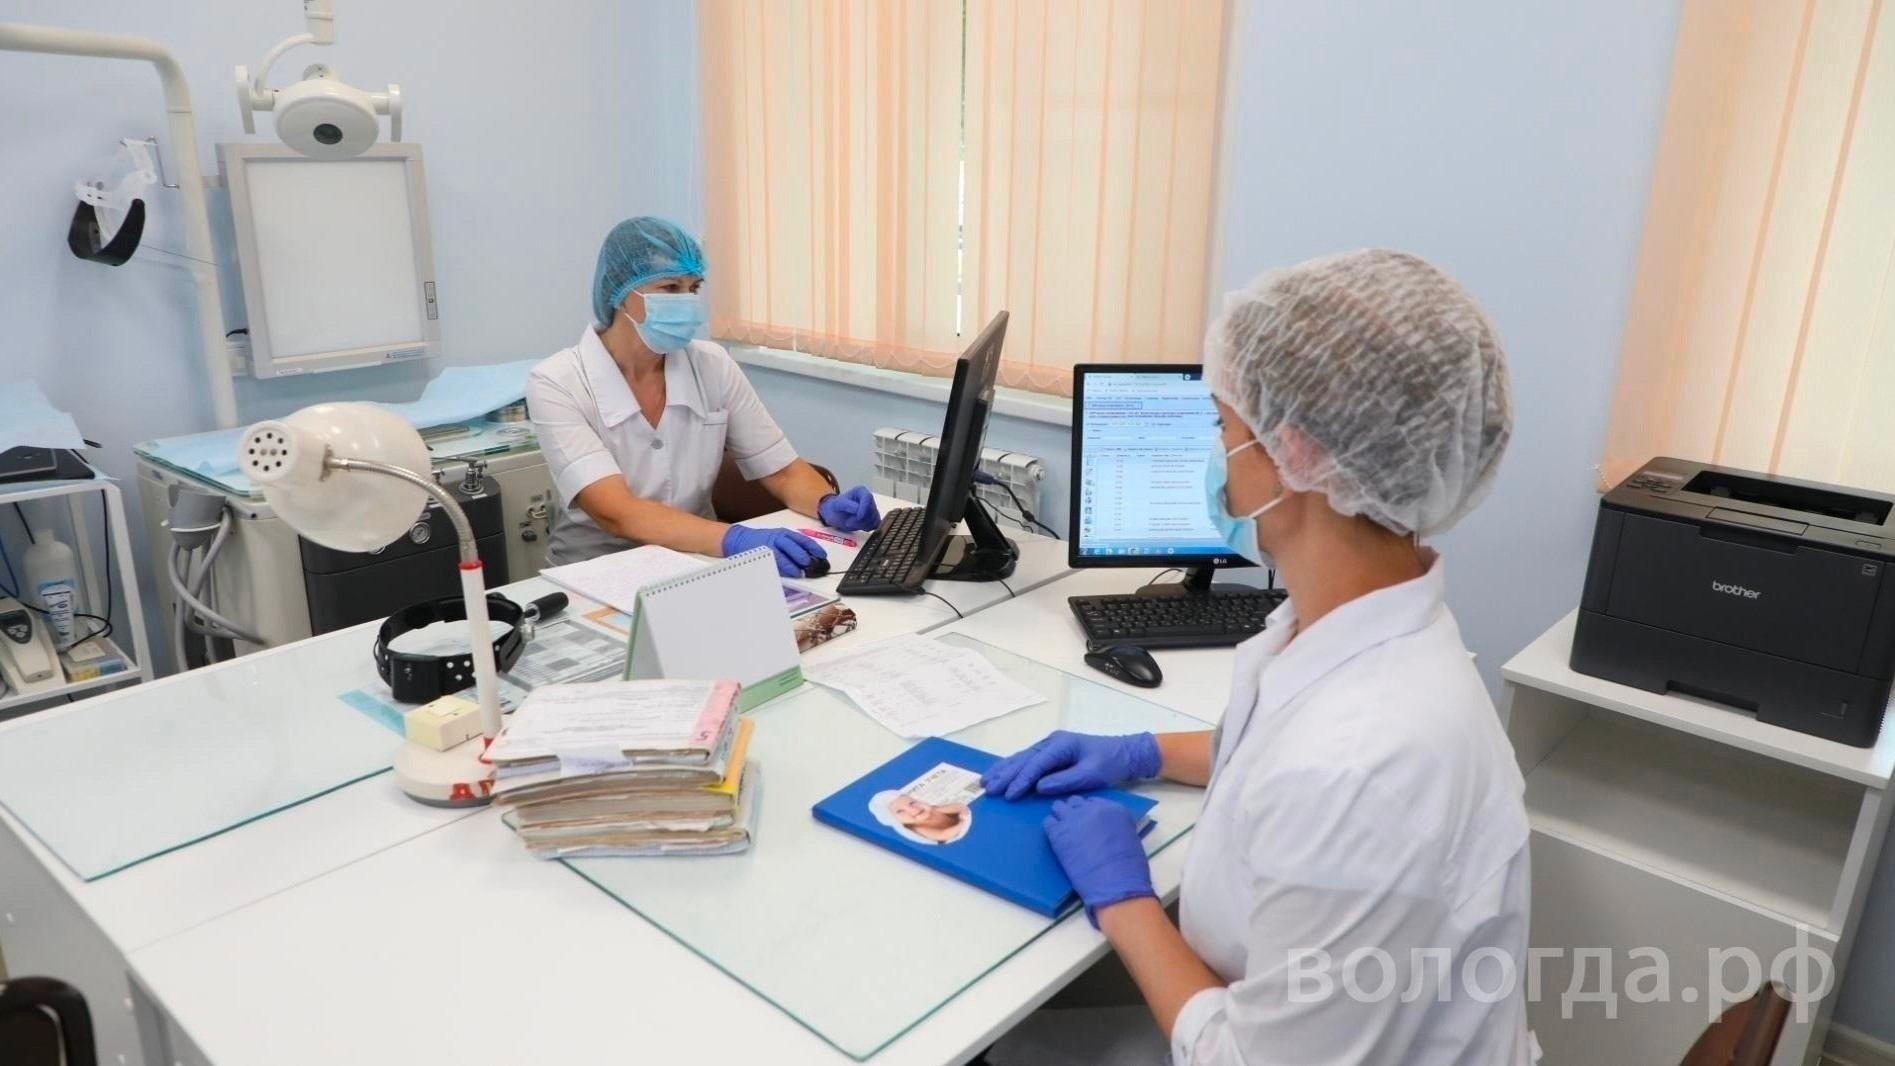 Программу привлечения медицинских работников разработали команды из Вологодской области на всероссийском конкурсе управленцев